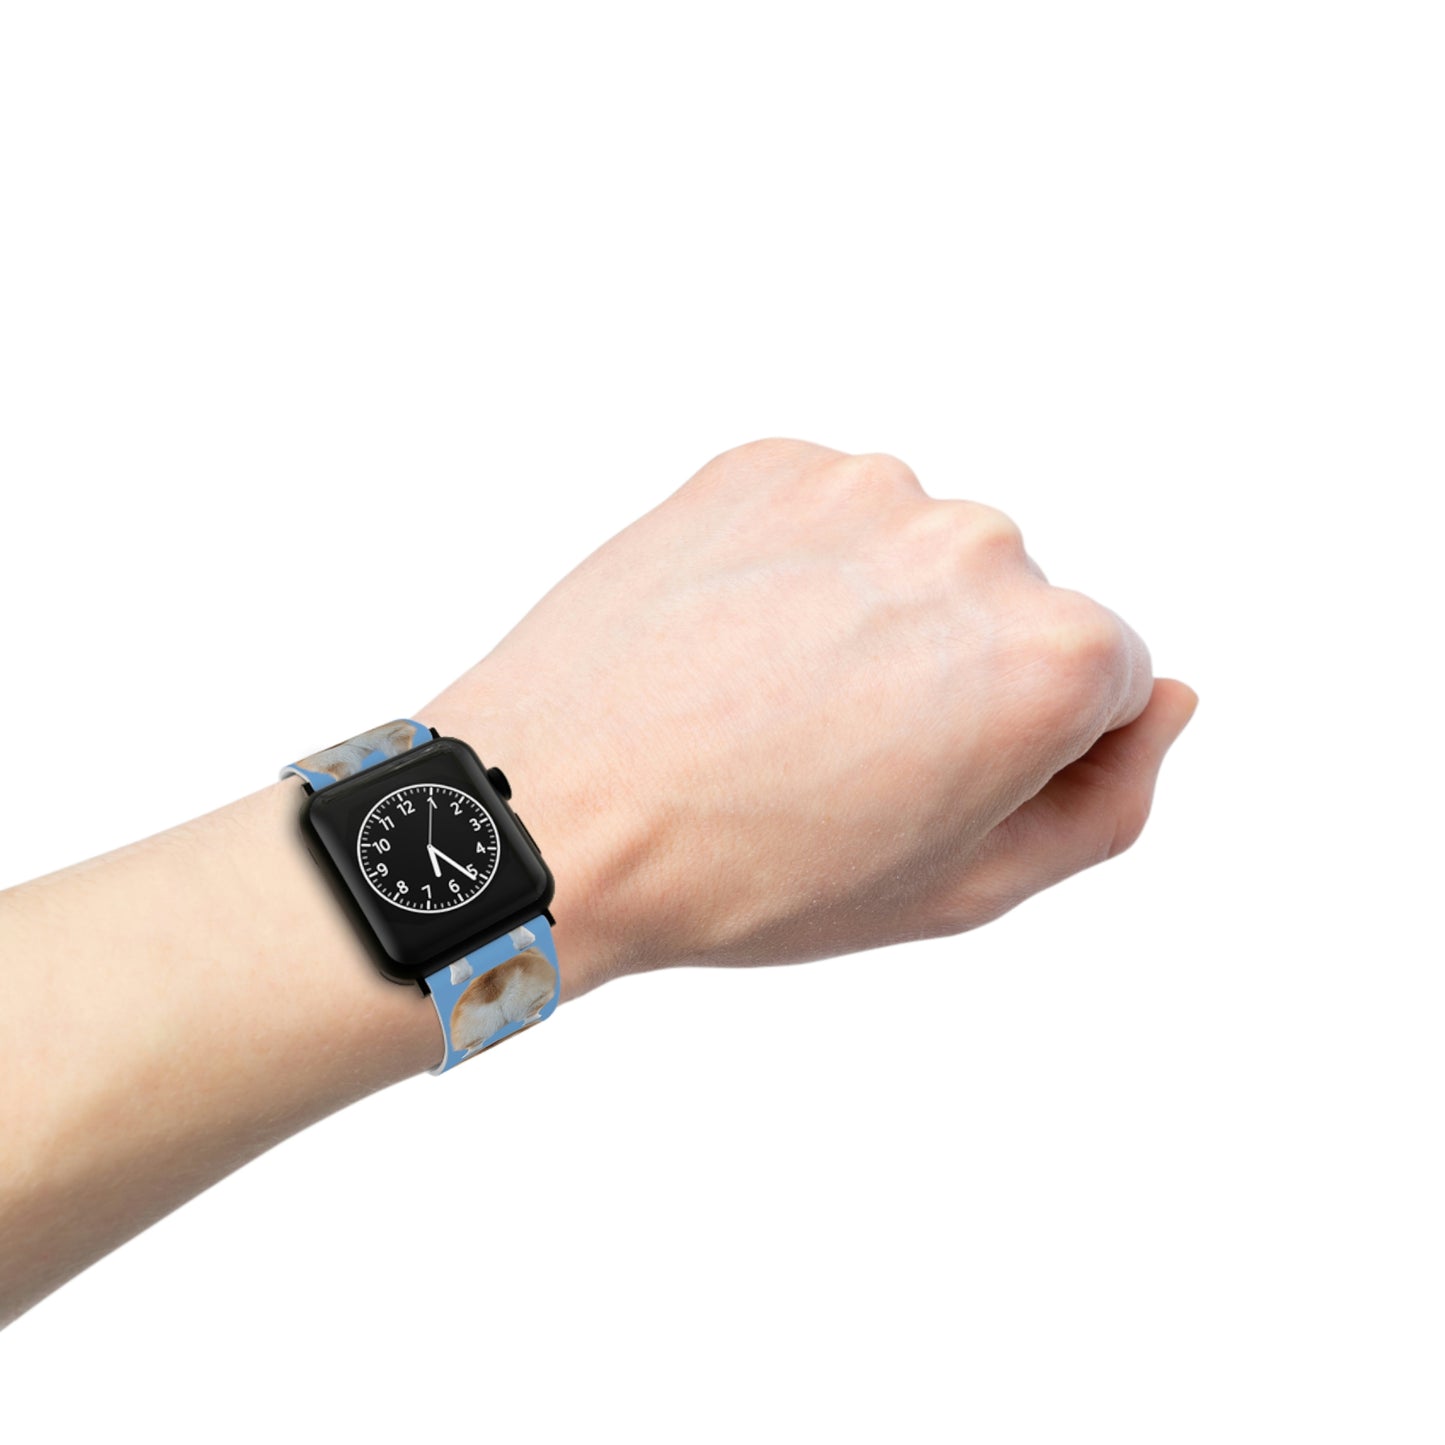 Blue Corgi Butt Watch Band for Apple Watch